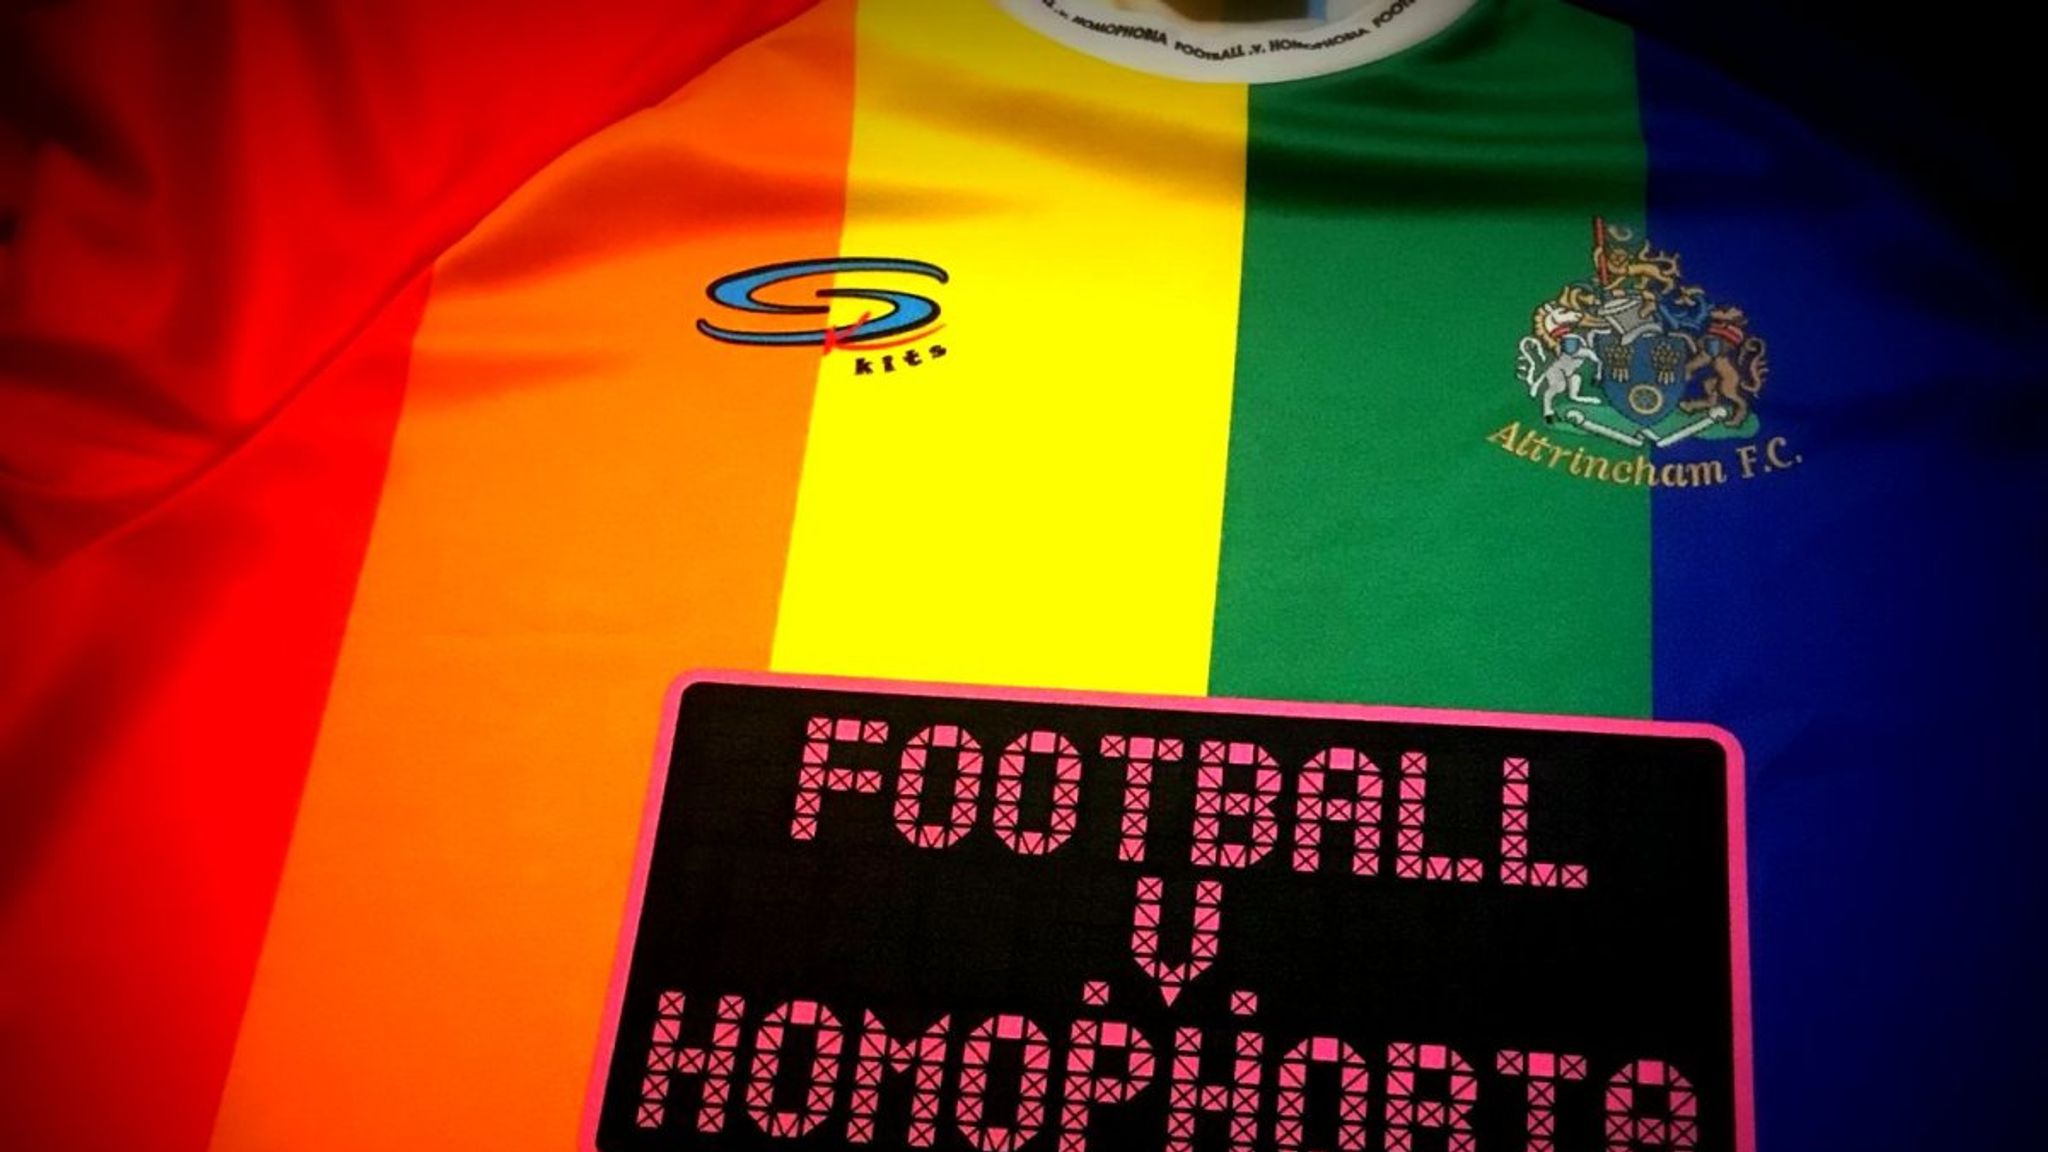 Altrincham Fc S Rainbow Kit For Football V Homophobia Sparks Global Interest Football News Sky Sports